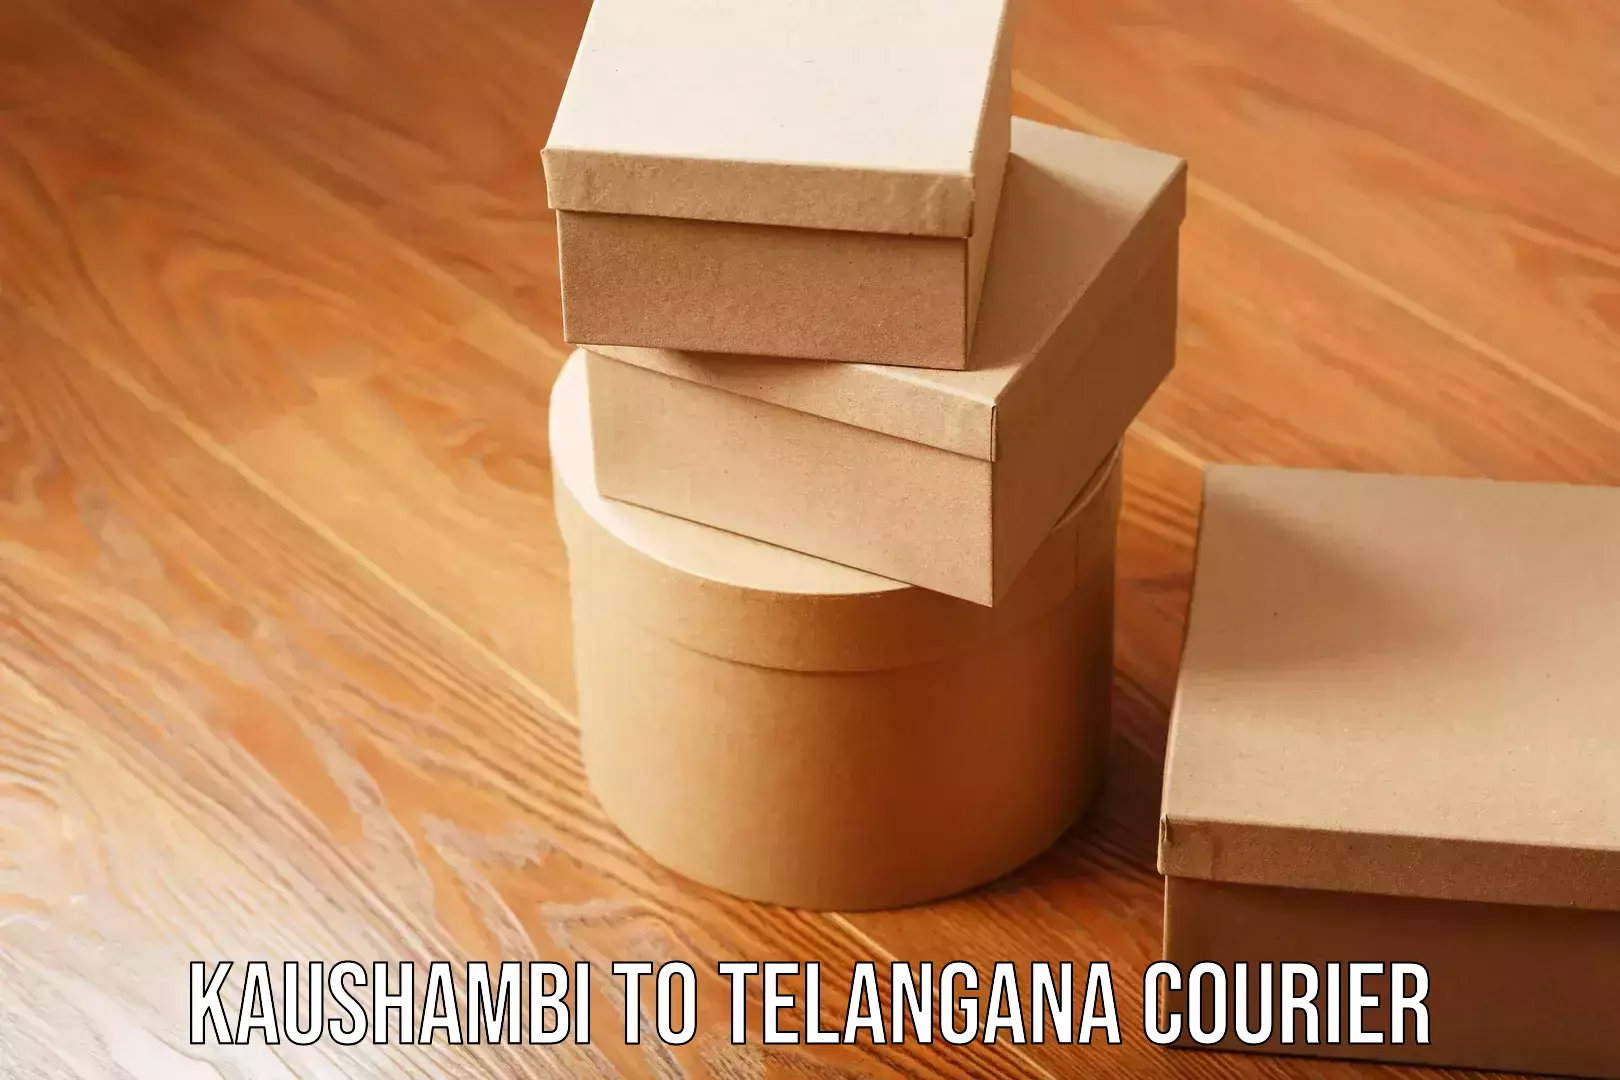 Furniture moving specialists Kaushambi to Telangana